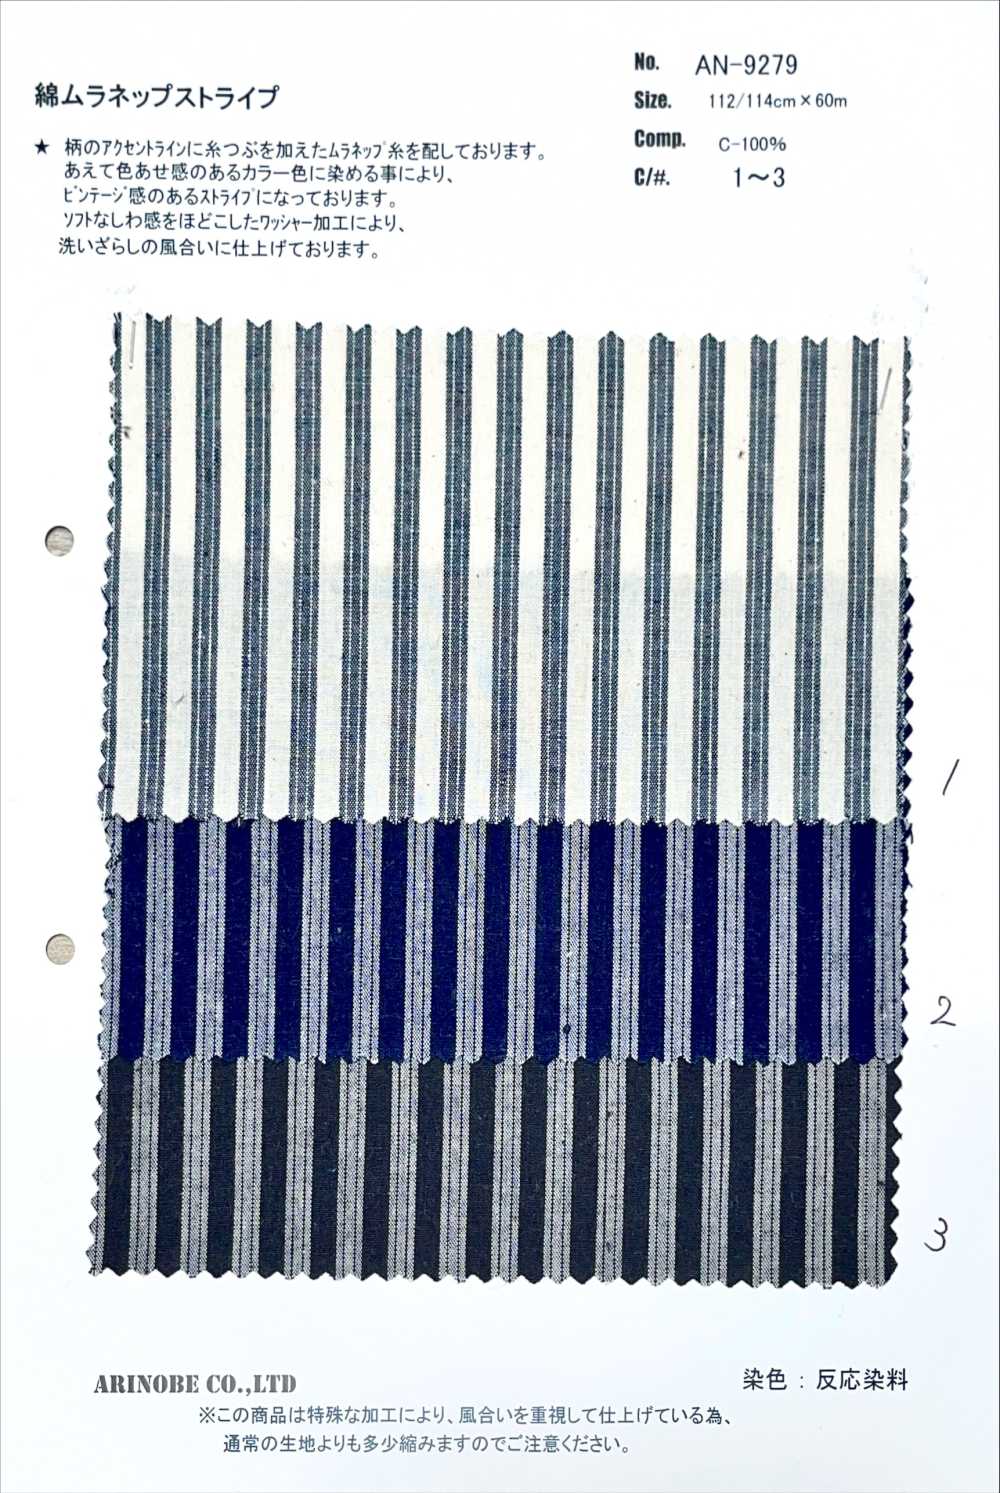 AN-9279 Baumwolle Muranep Streifen[Textilgewebe] ARINOBE CO., LTD.